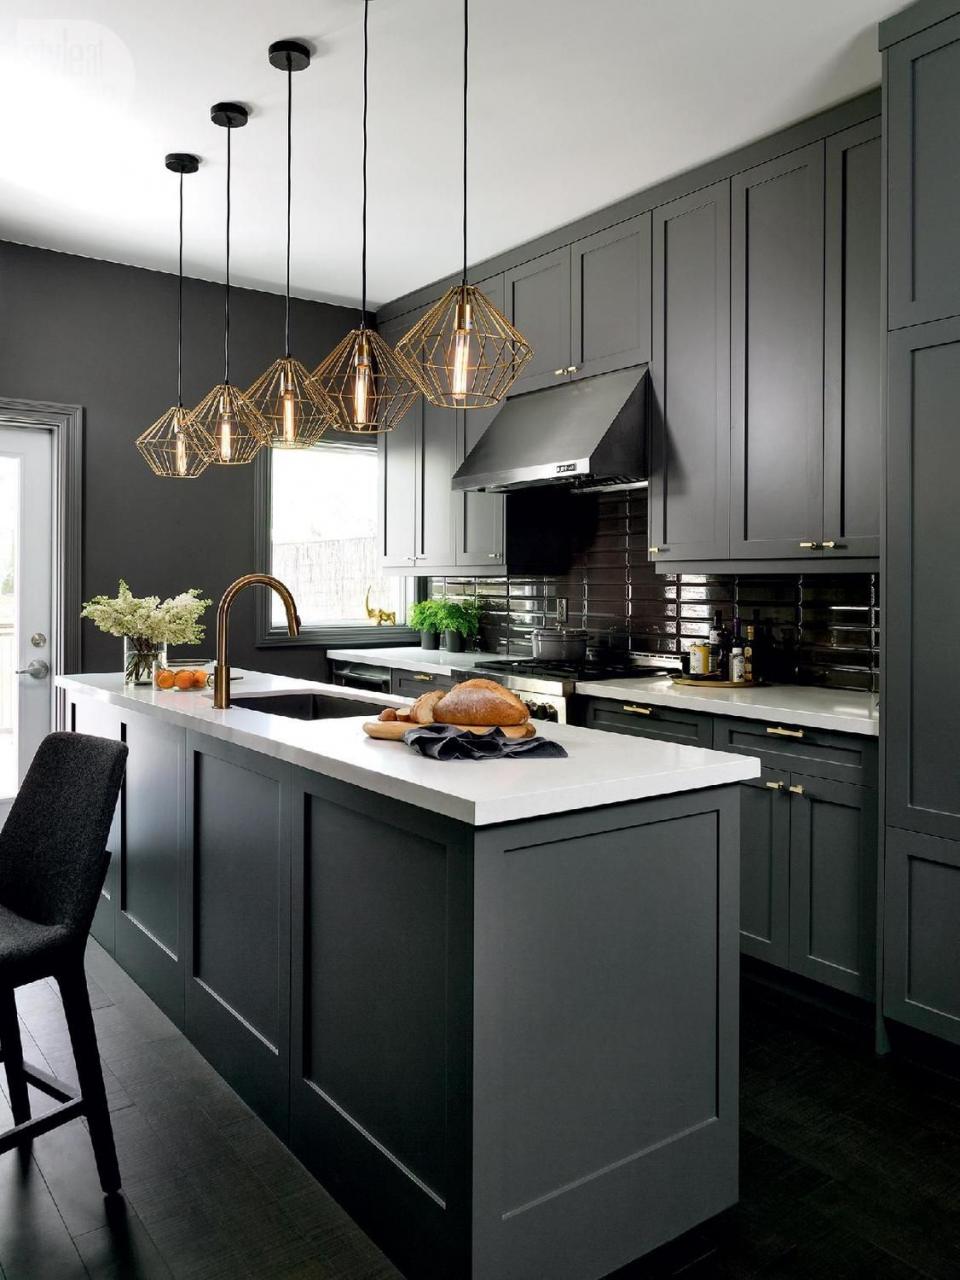 White and dark grey kitchen cabinet